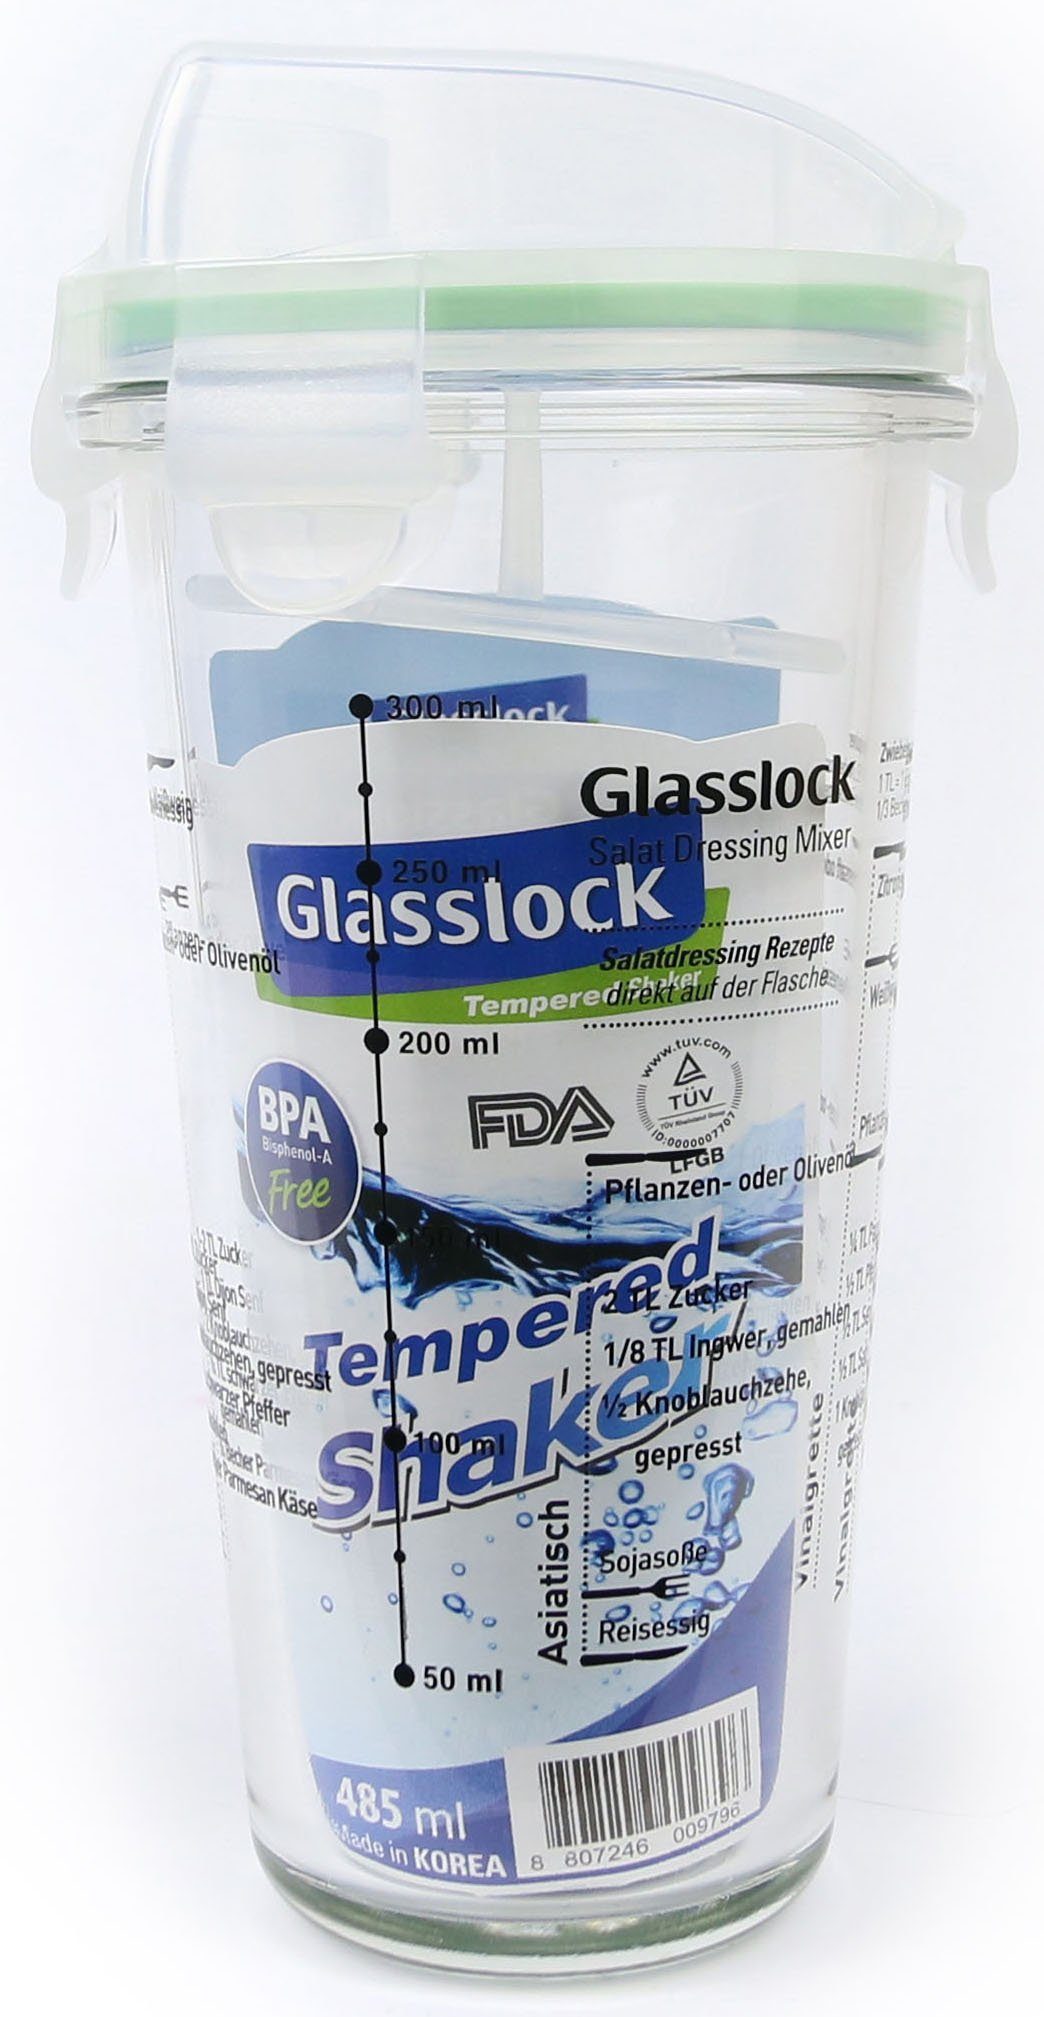 Shaker, Dressing Glasslock (Cocktail ml Glas, 450 Shaker),